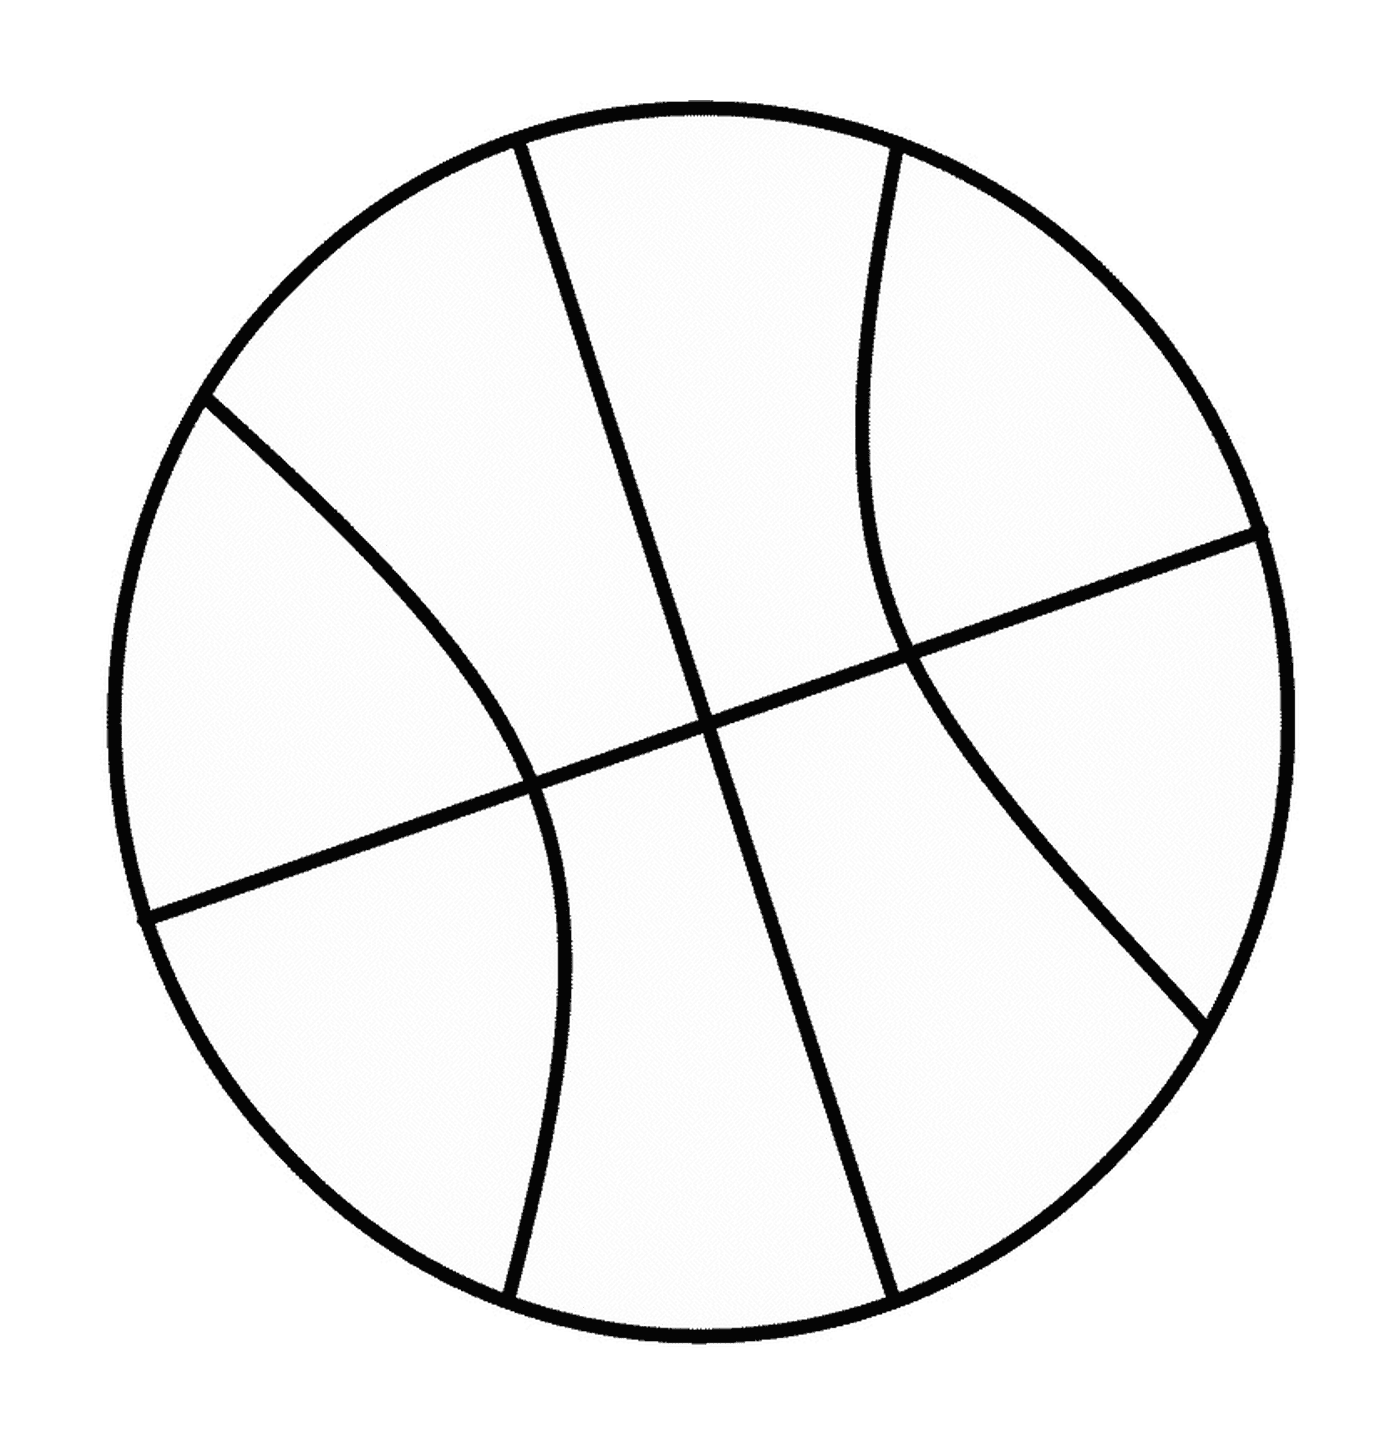  Image of a basketball 